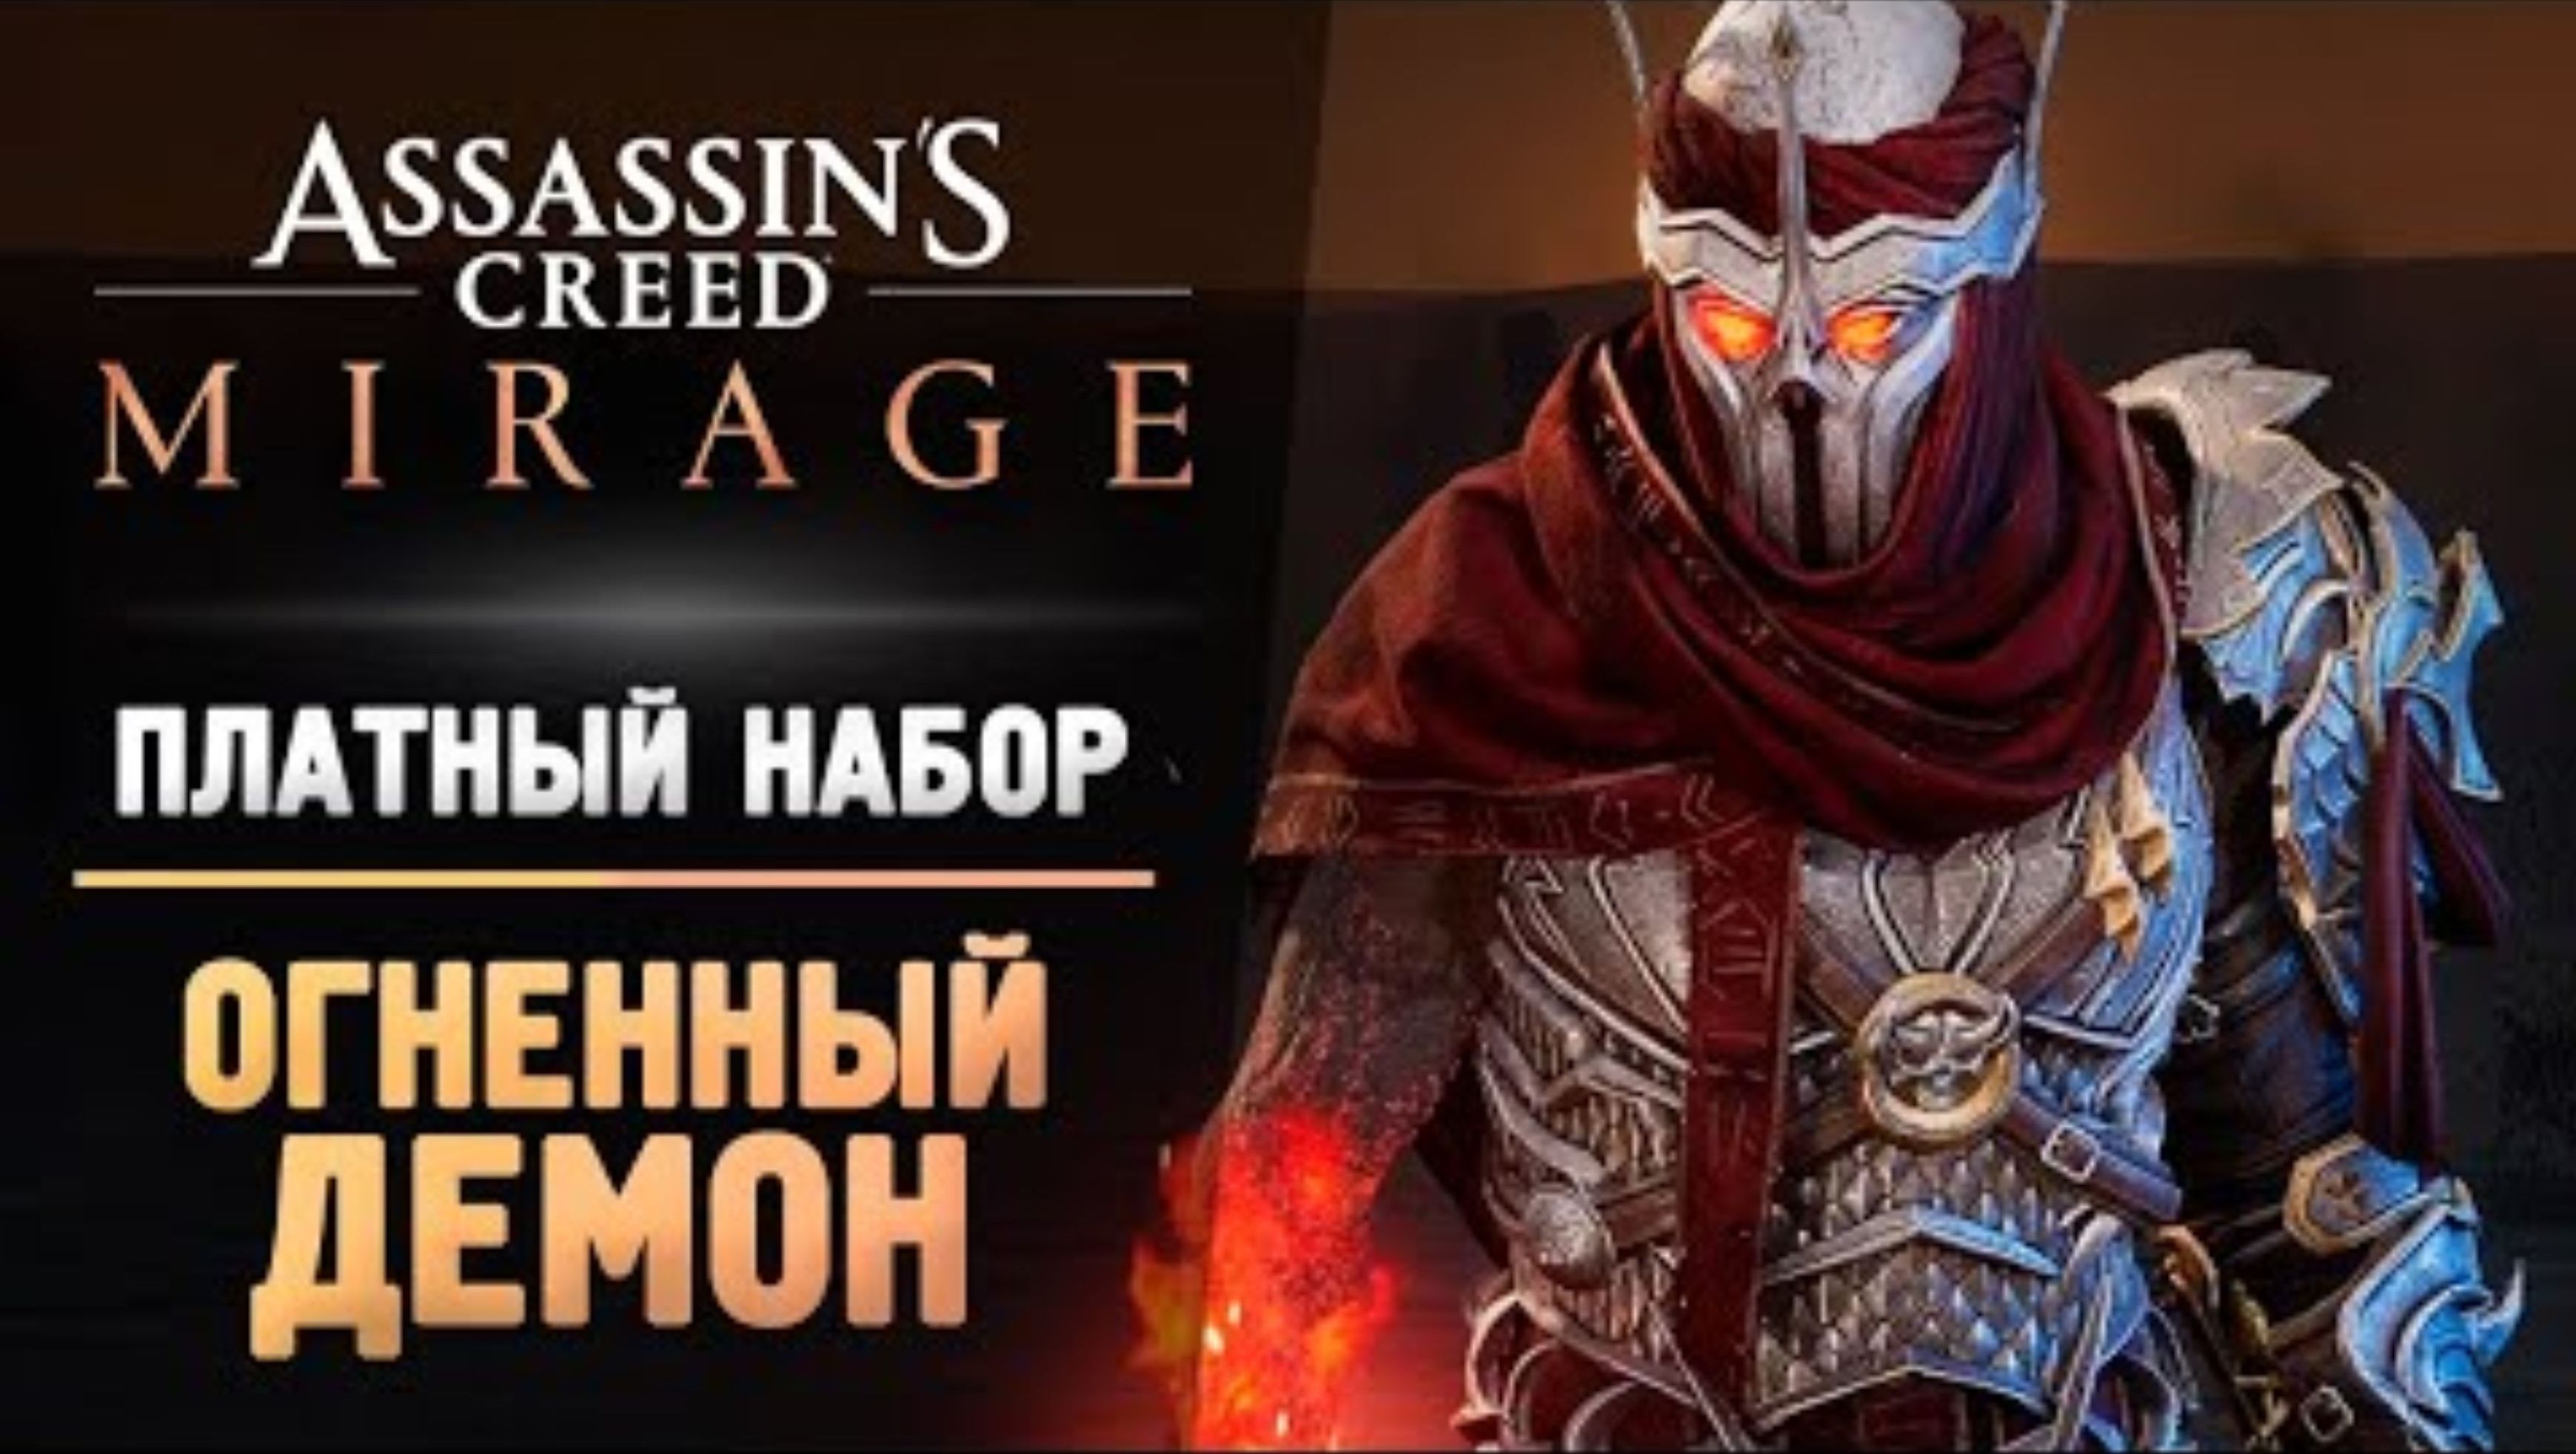 ОГНЕННЫЙ ДЕМОН АССАСИН - Прохождение - Assassin’s Creed Mirage #5